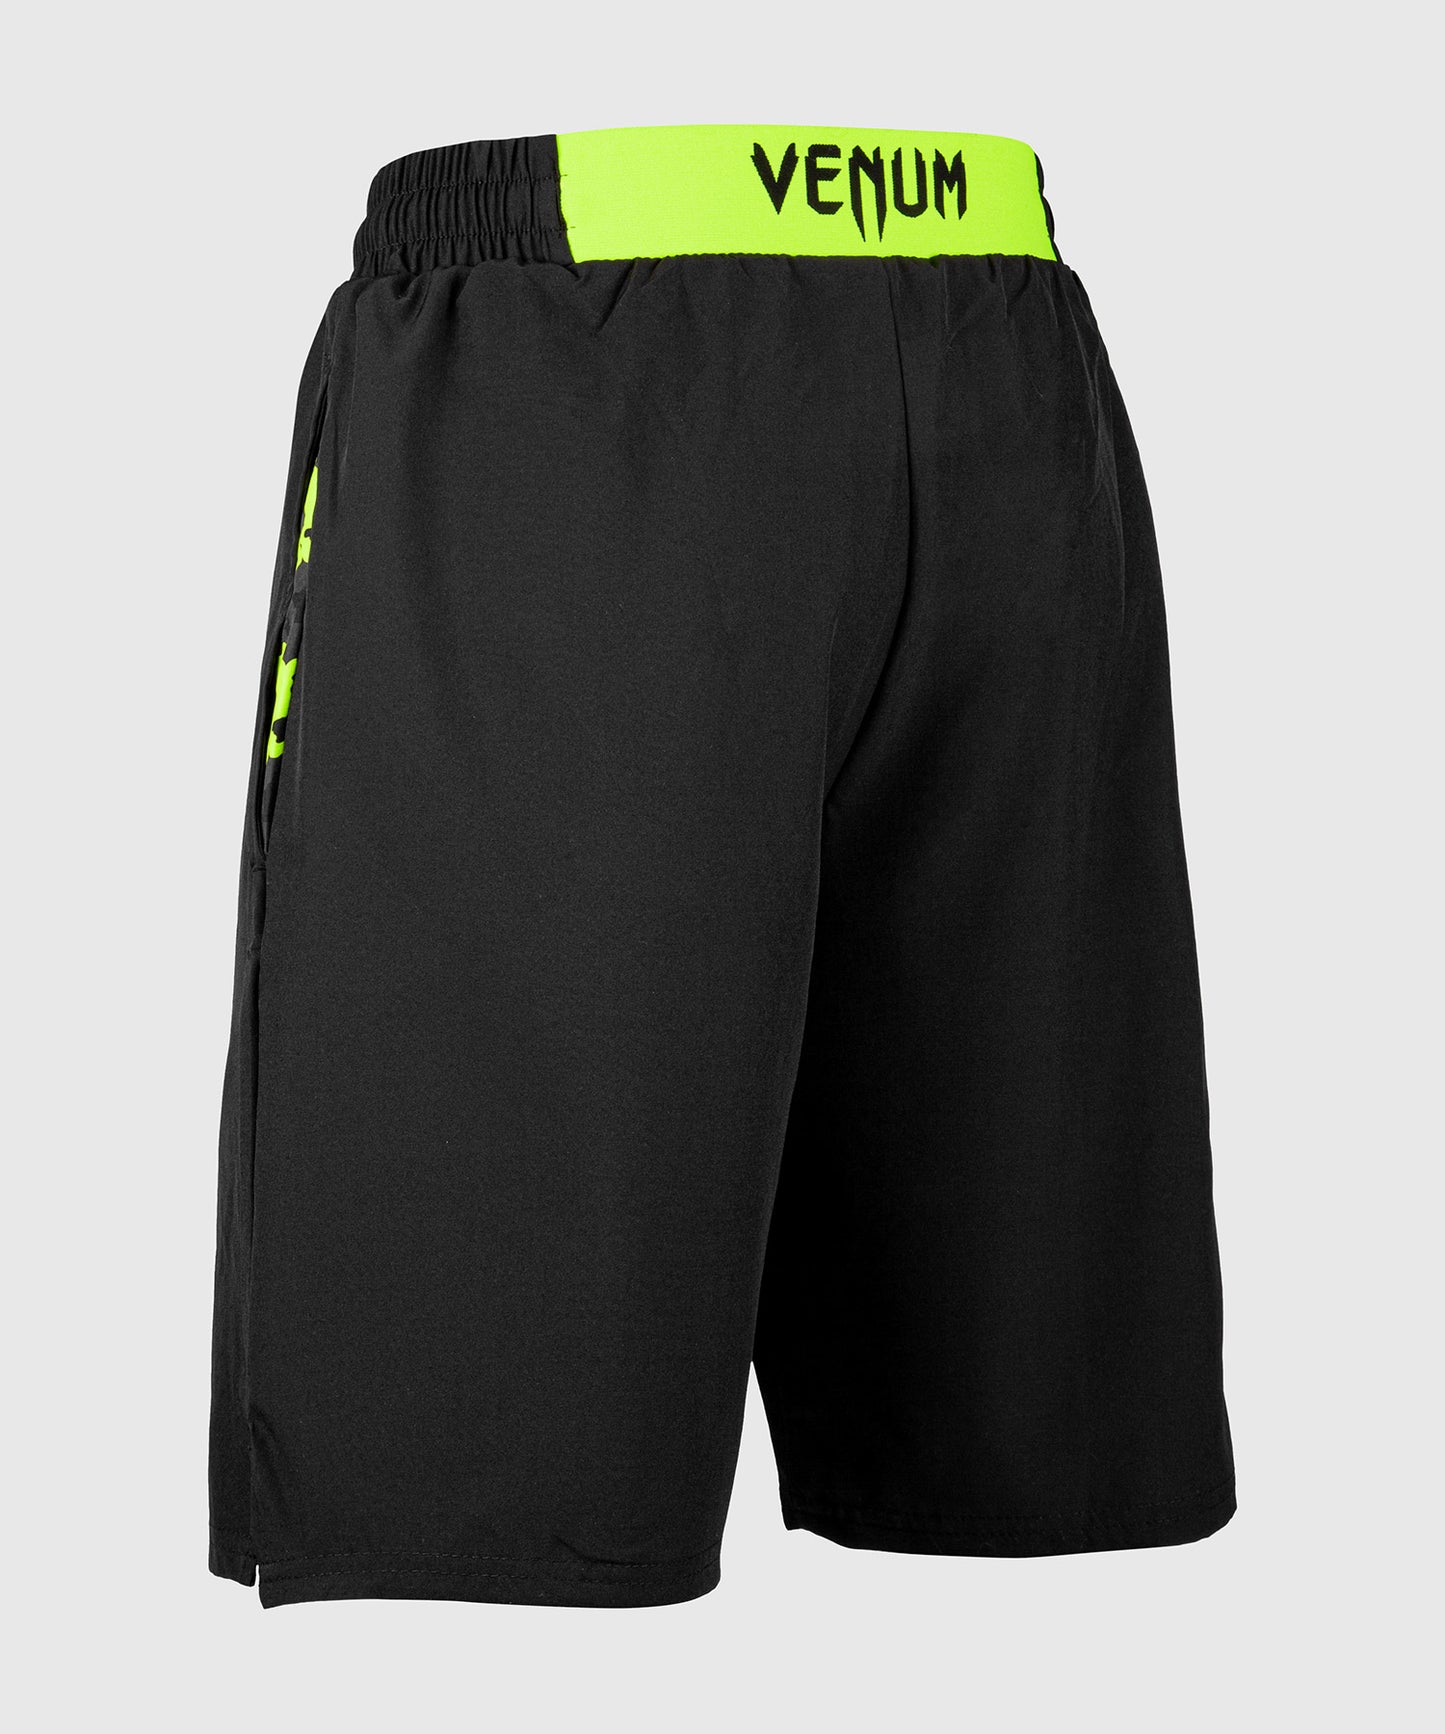 Pantalón corto de entrenamiento Venum Classic - Negro/Amarillo Fluo